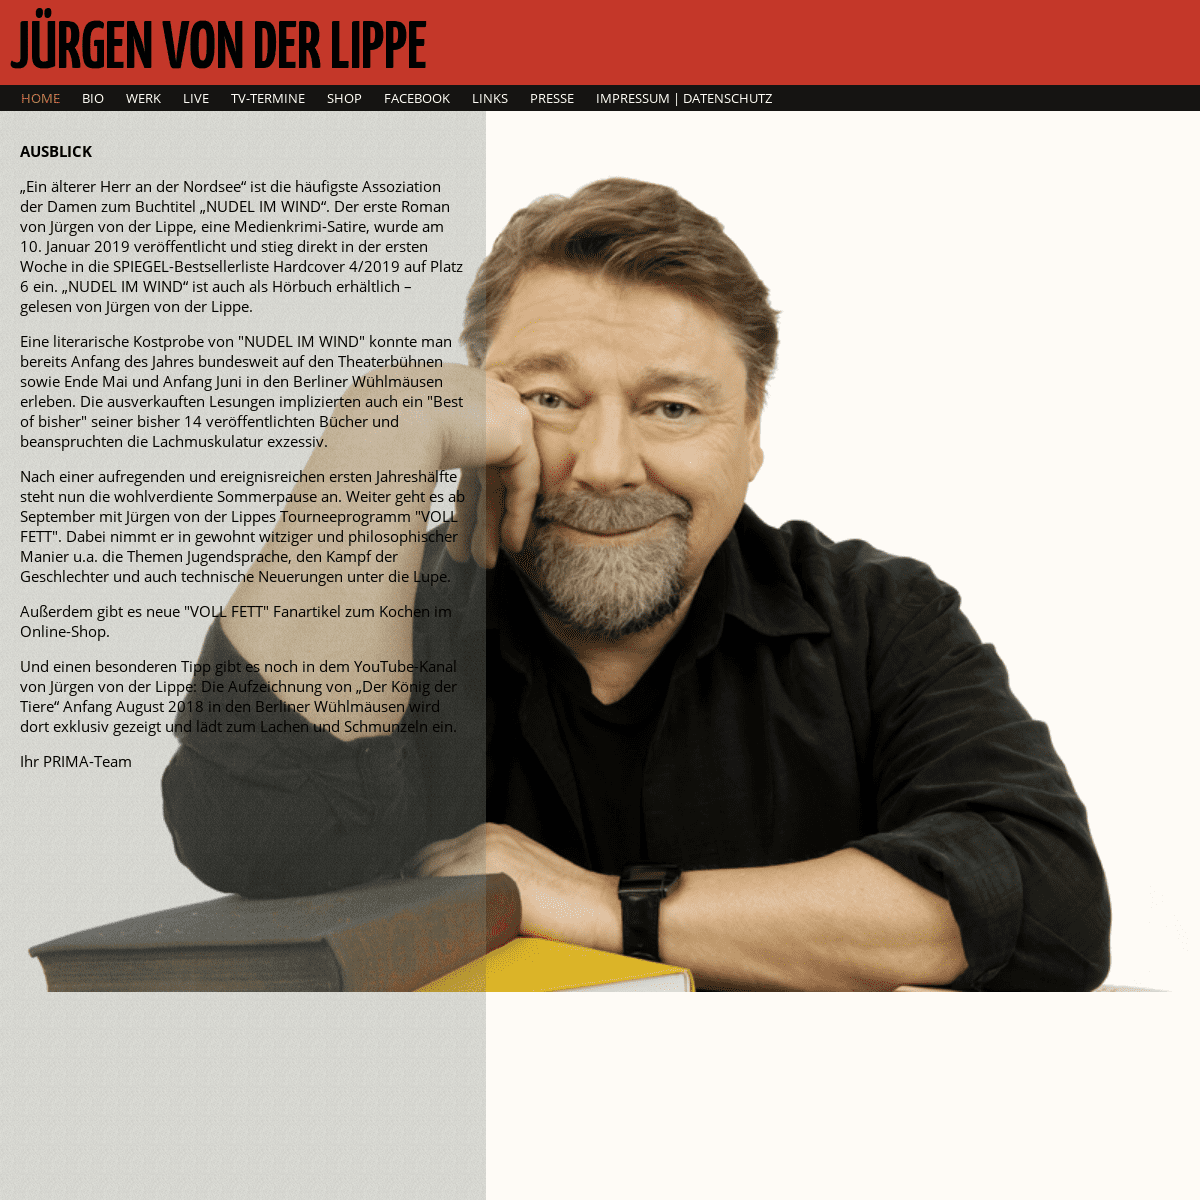 Jürgen von der Lippe Termine Tourdaten und Biografie